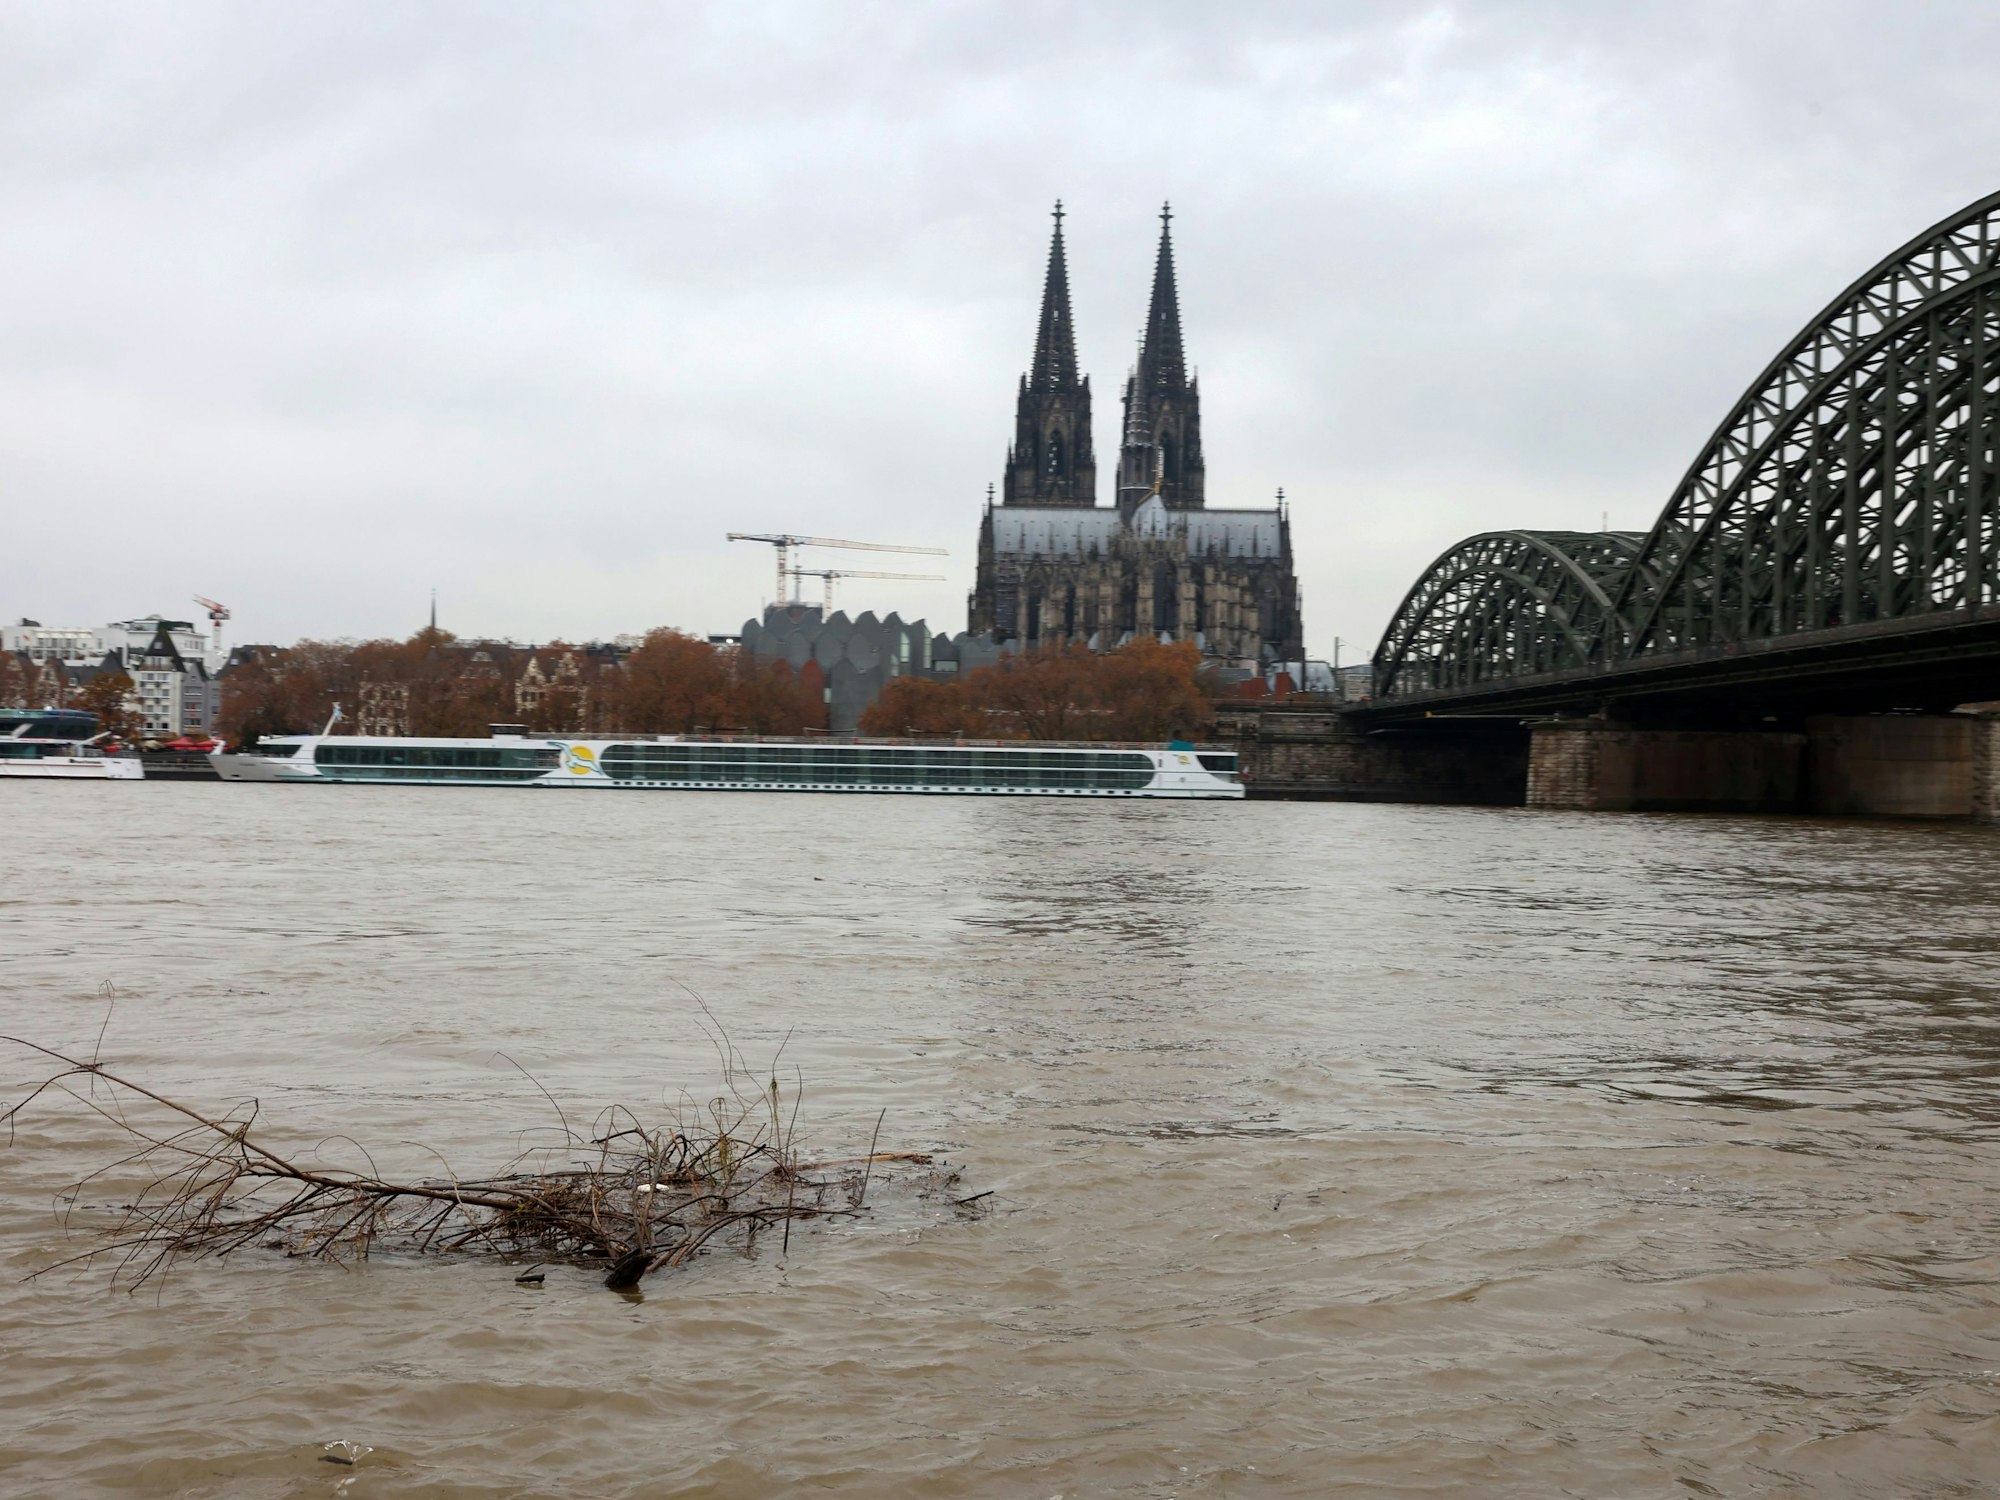 Hochwasser am Rheinboulevard. Blick auf den Kölner Dom.